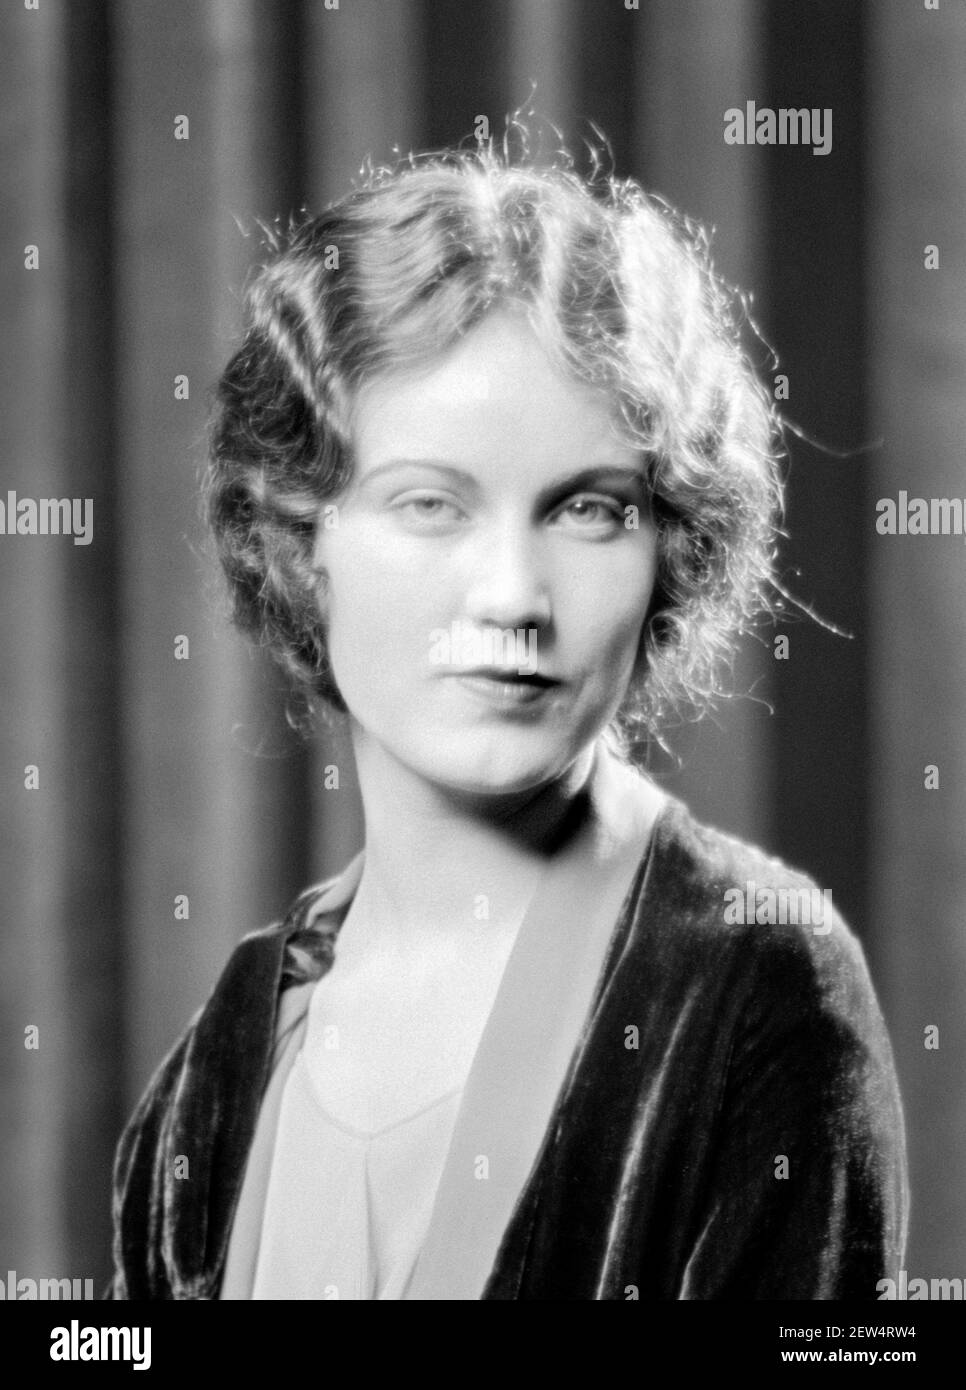 Fay Wray. Portrait de l'actrice canado-américaine Vina Fay Wray (1907-2004), par Arnold Genthe, 1927. Wray est plus célèbre pour son rôle dans le film de 1933 'King Kong' Banque D'Images